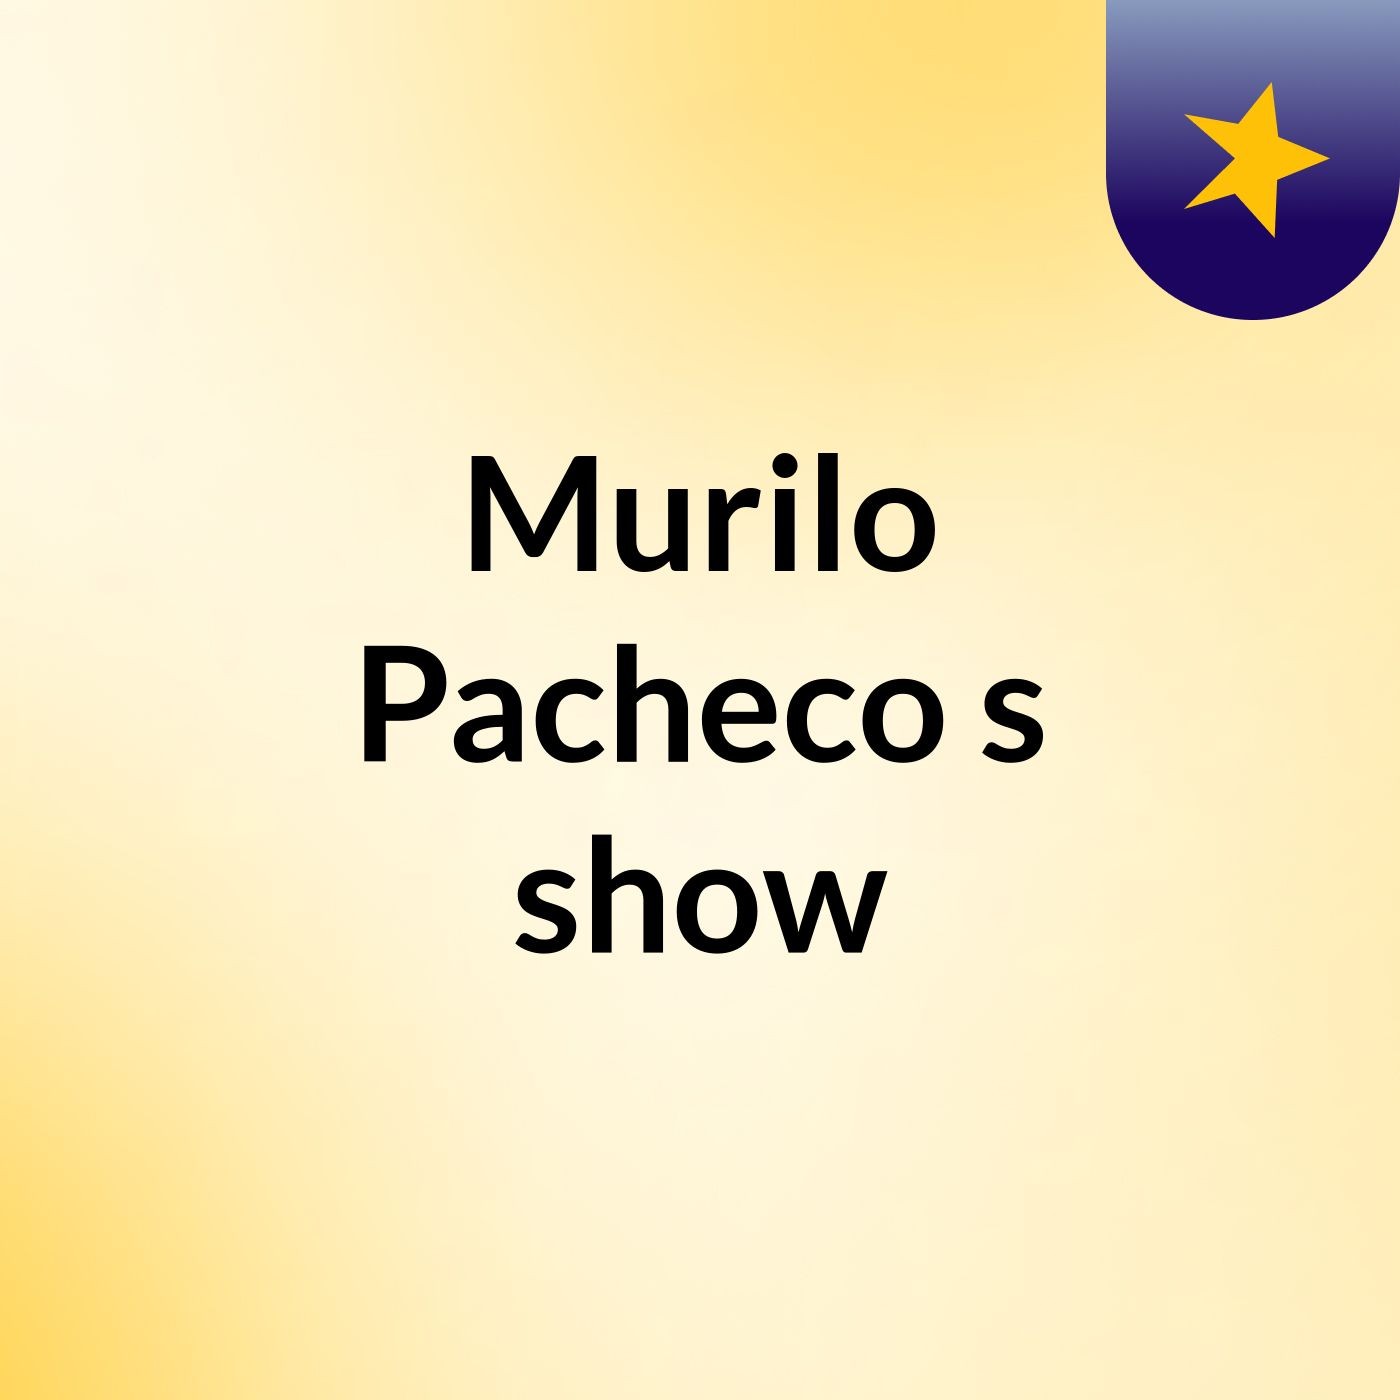 Murilo Pacheco's show